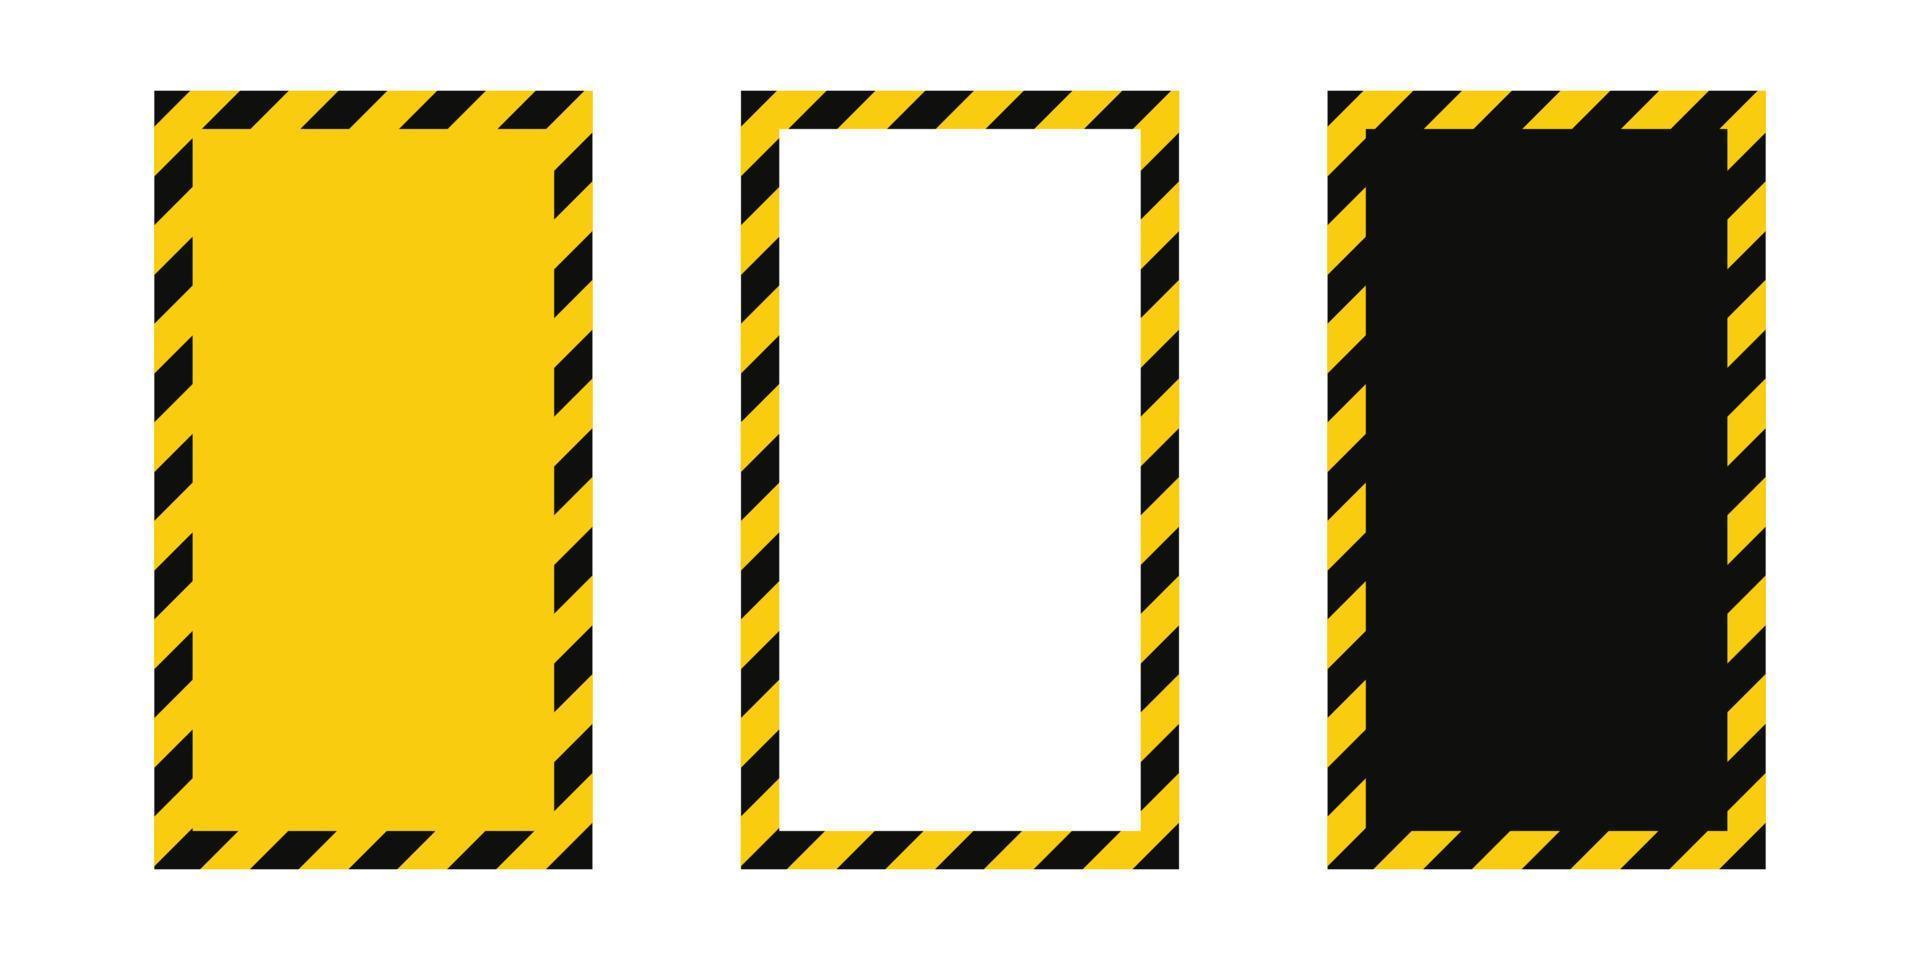 cadre d'avertissement avec rayures diagonales jaunes et noires. ensemble de cadres d'avertissement de rectangle. bordure de ruban de mise en garde jaune et noir. illustration vectorielle sur fond blanc vecteur